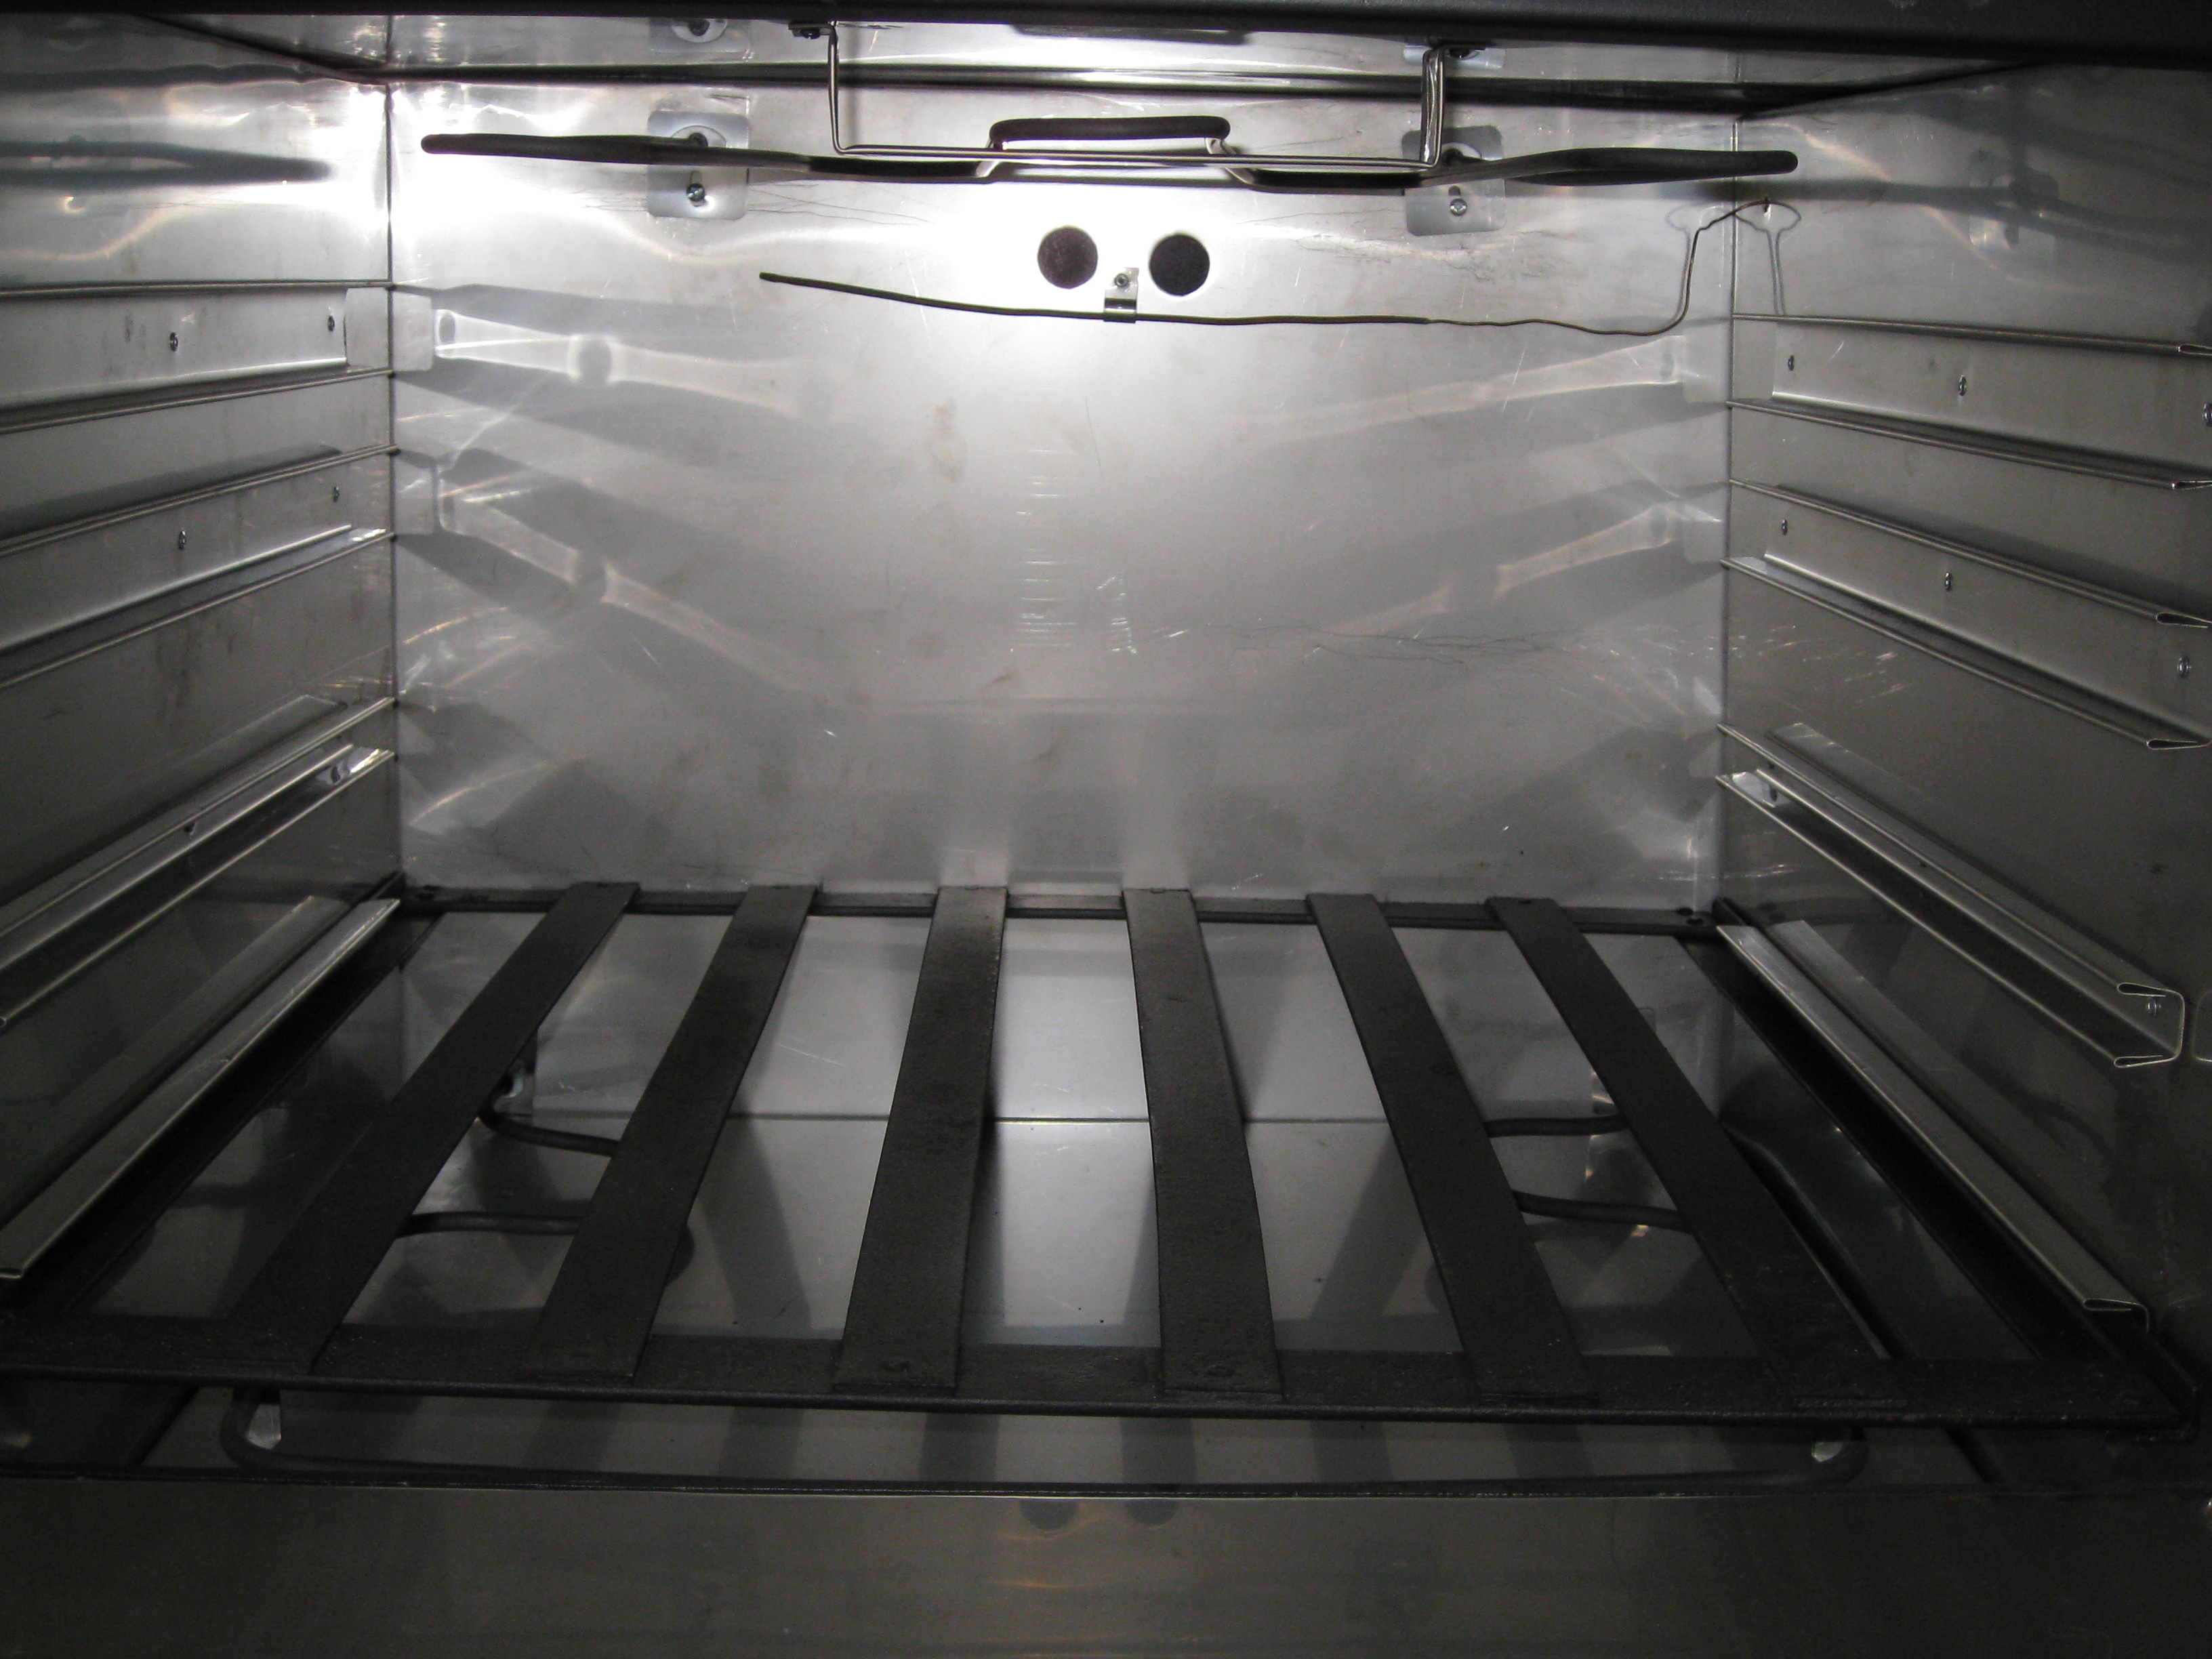 Inside Oven